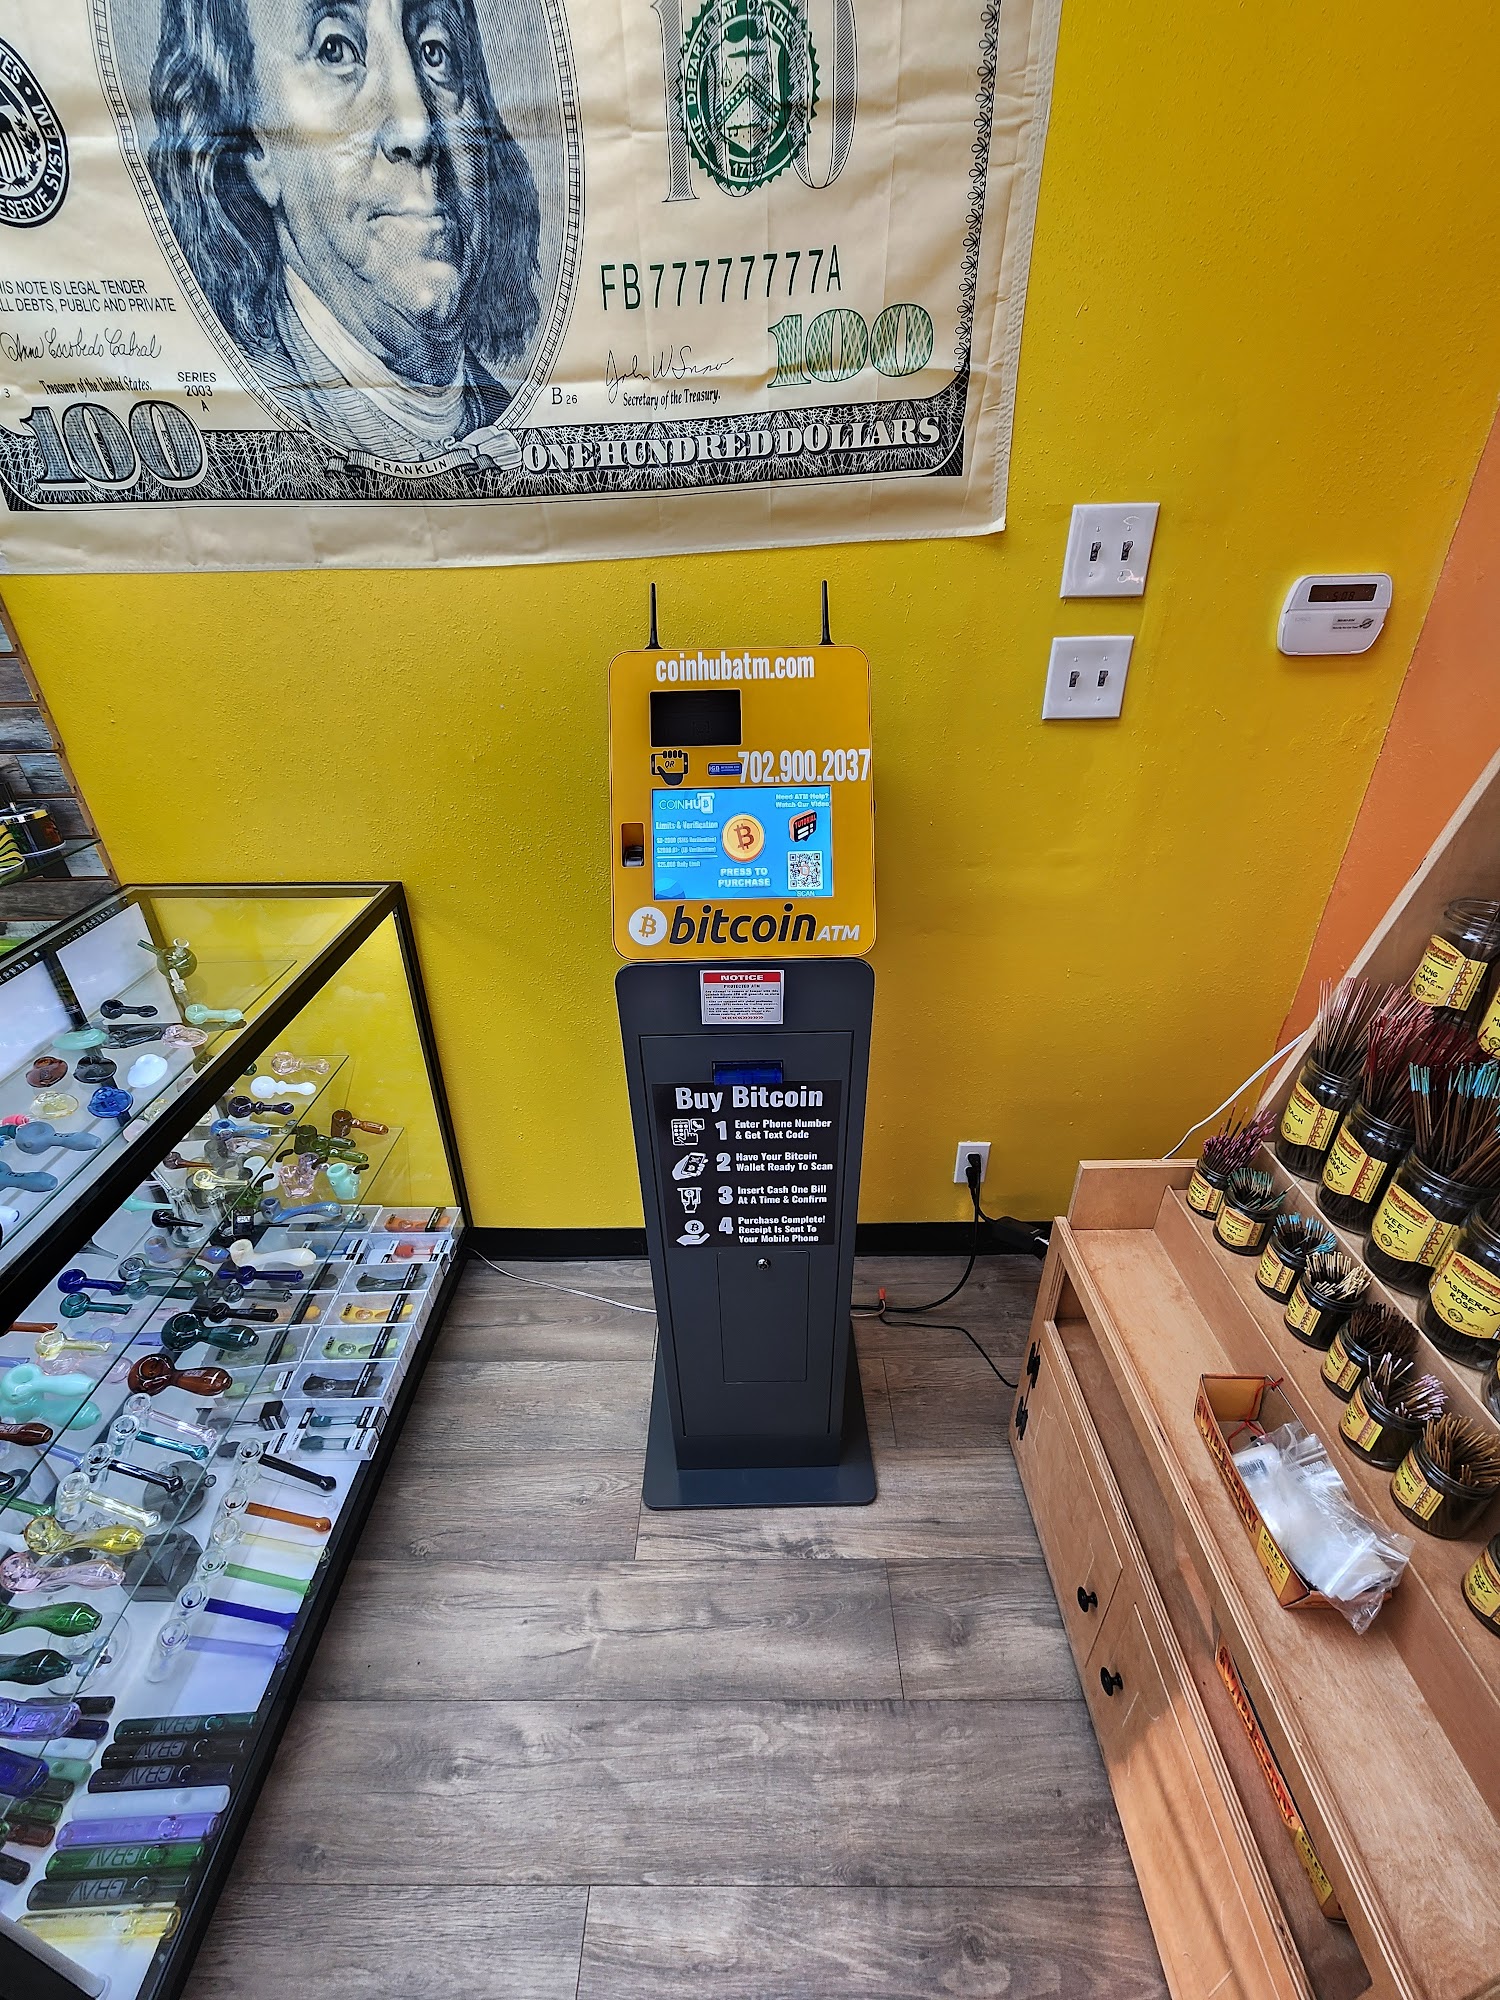 Bitcoin ATM Texarkana - Coinhub